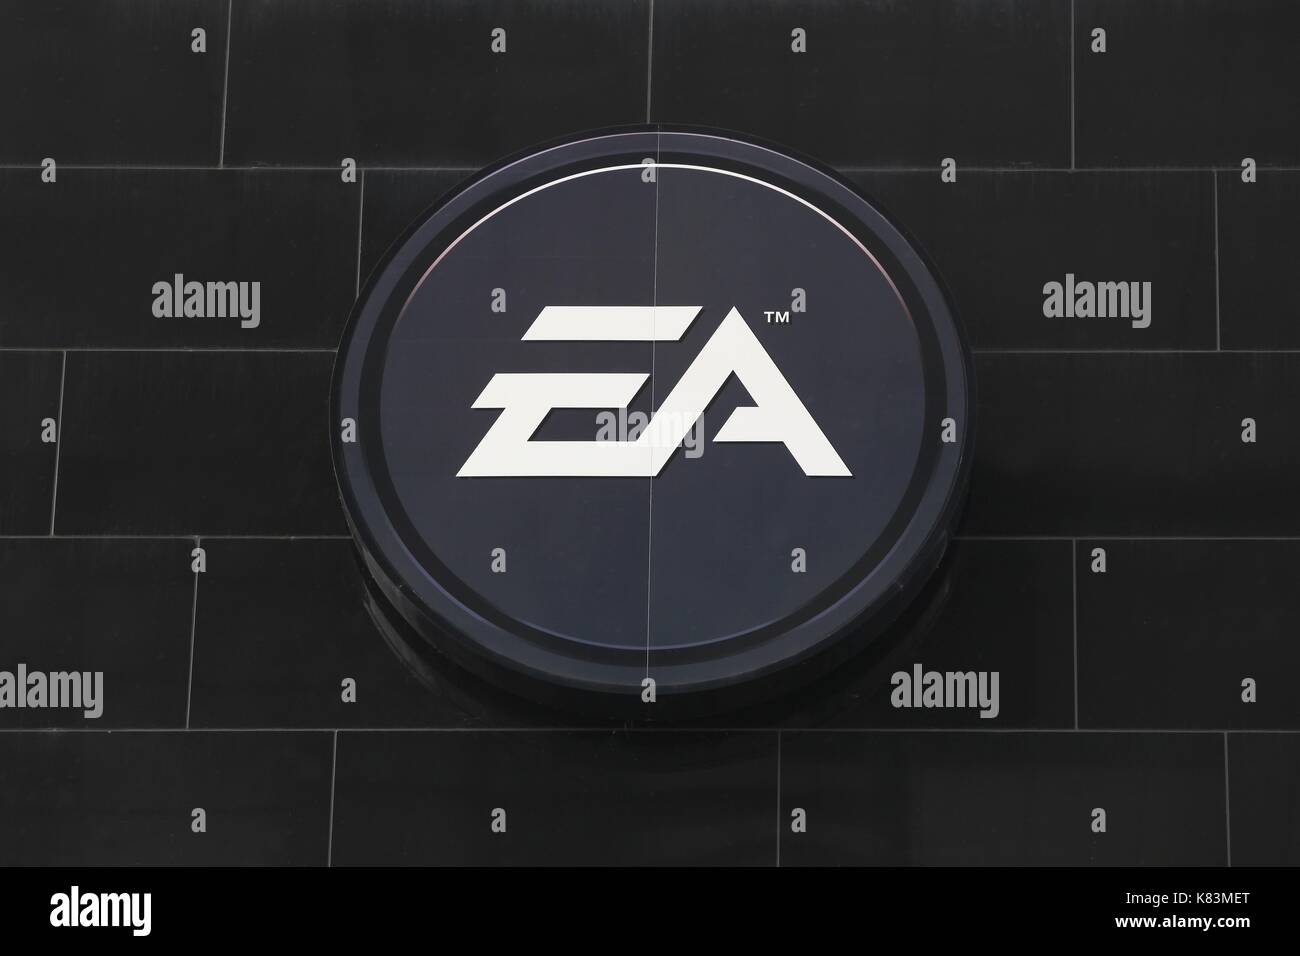 Cologne, Allemagne - 2 juillet 2017 : logo Electronic Arts sur un mur. Electronic Arts est une société américaine de jeux vidéo Banque D'Images